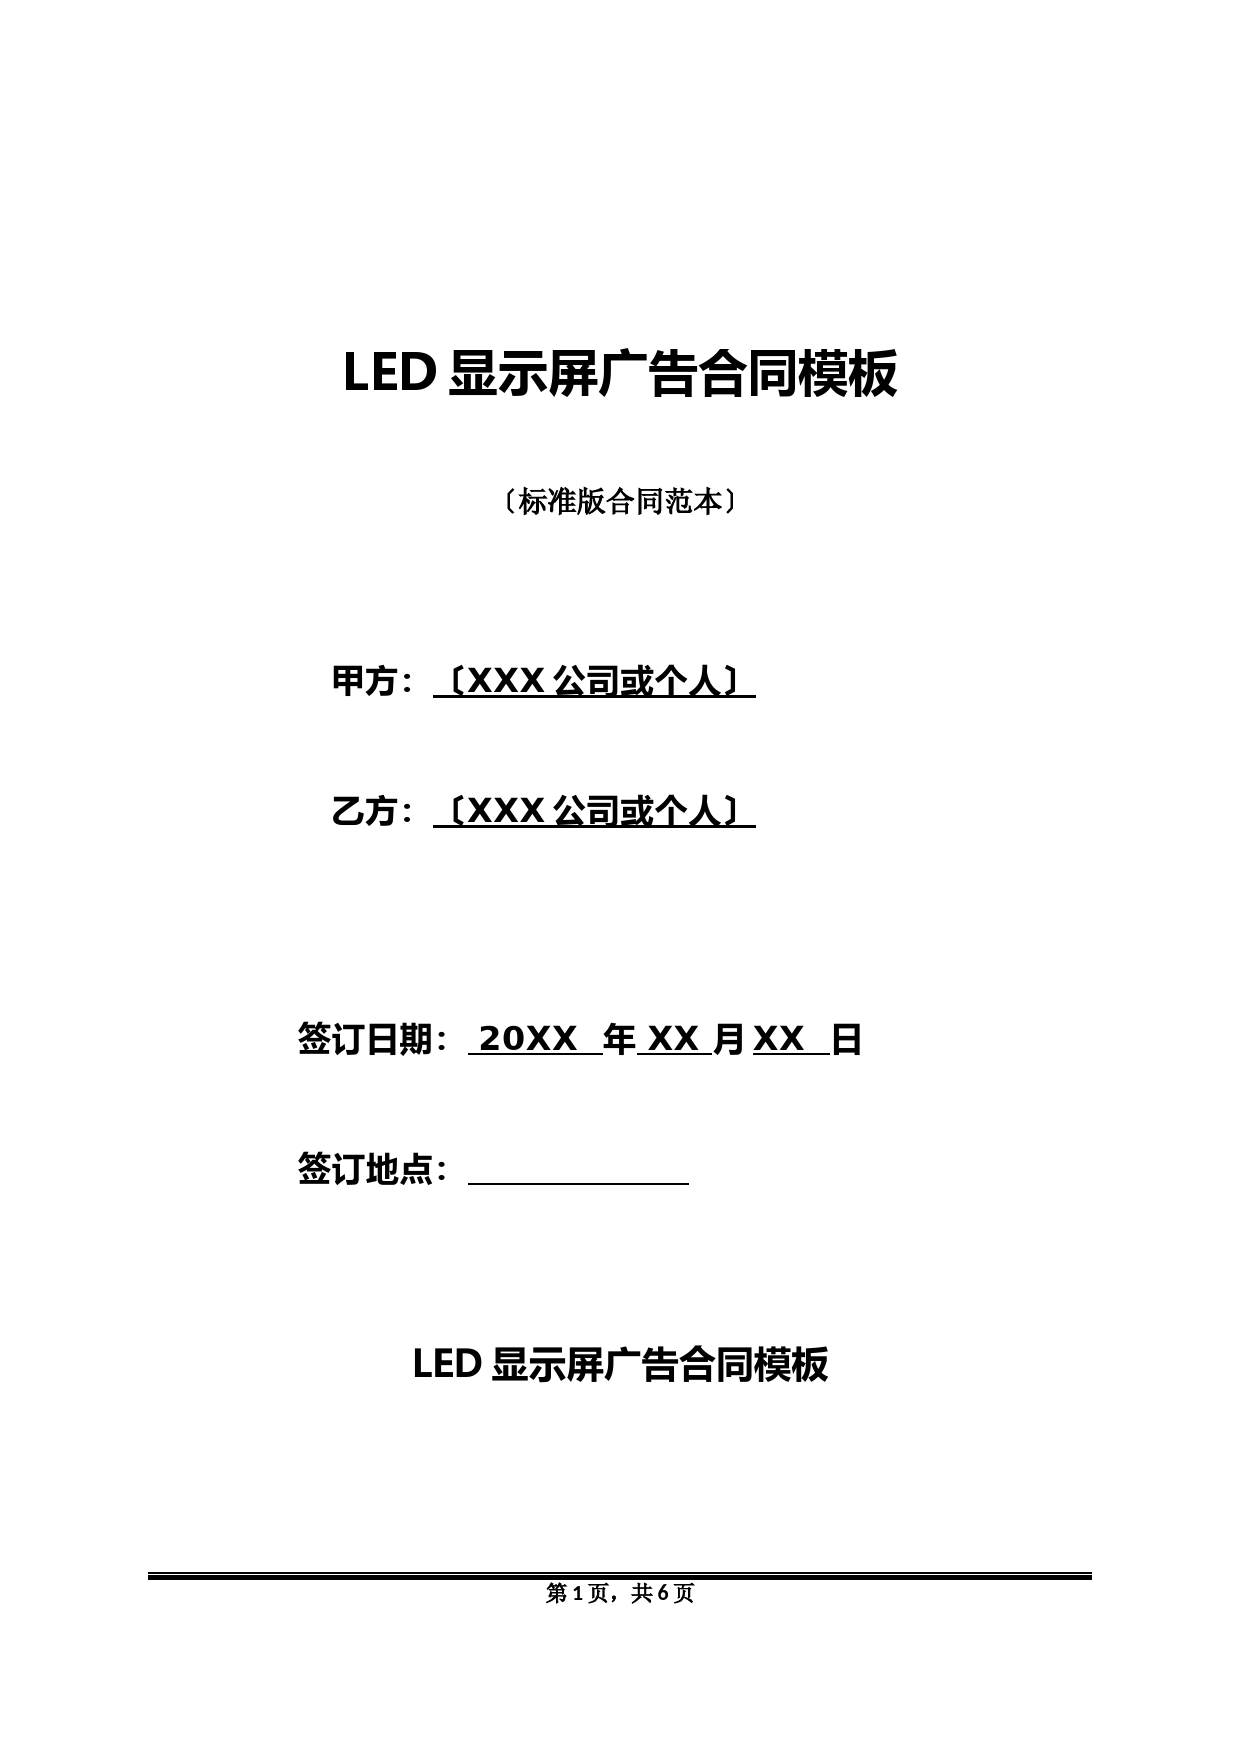 LED显示屏广告合同模板(标准版)